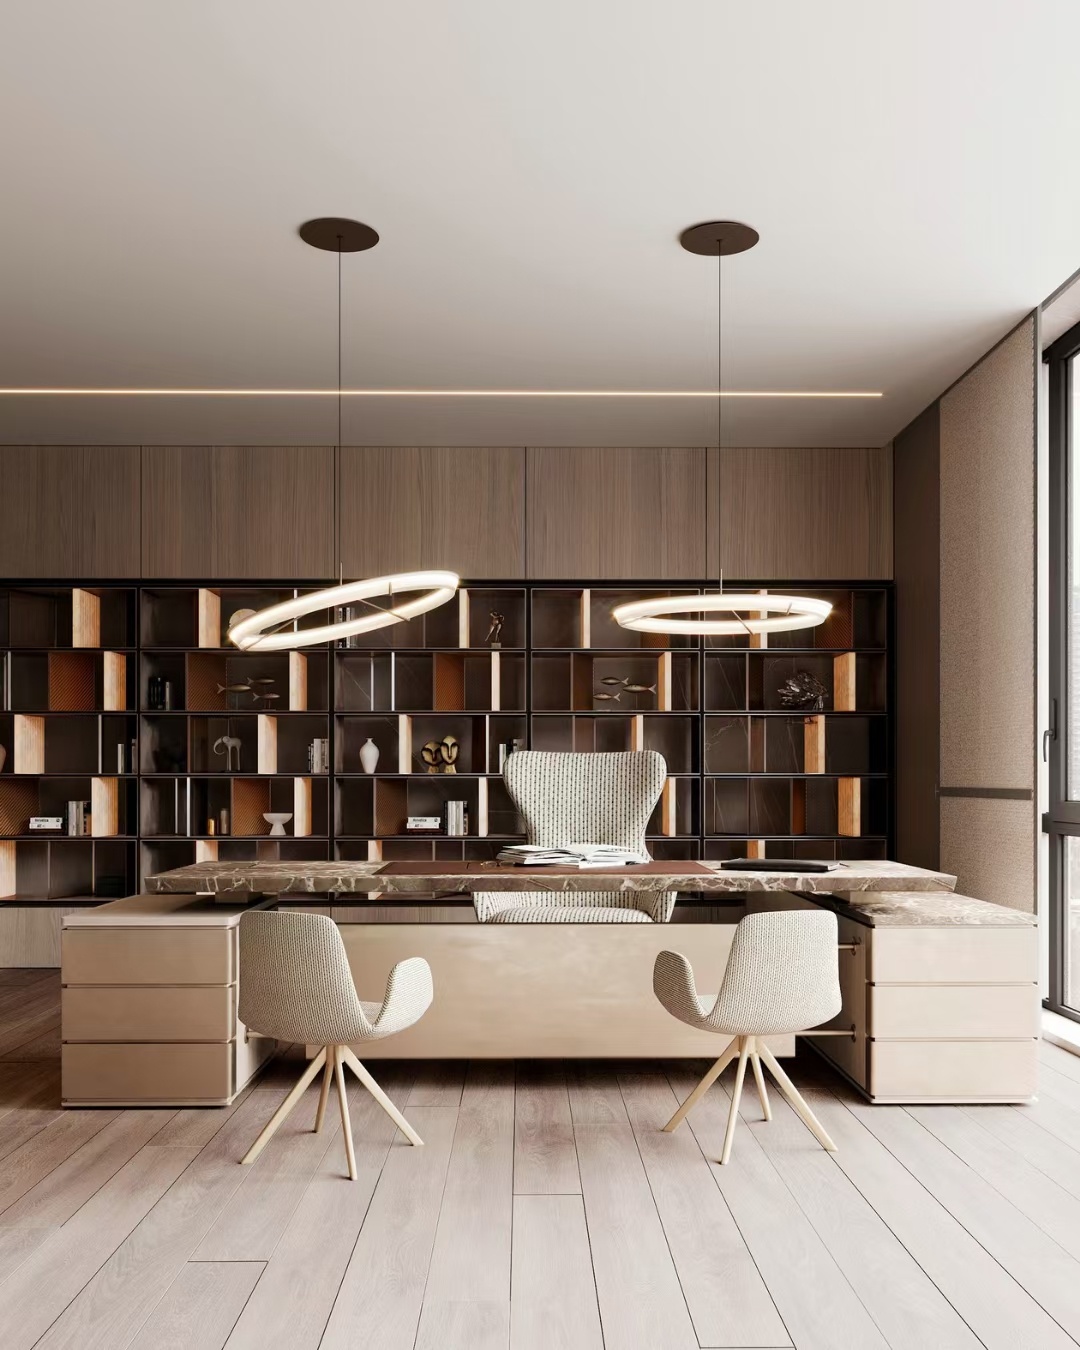 营造温馨的棕色：2套现代舒适的家居设计 - 设计之家